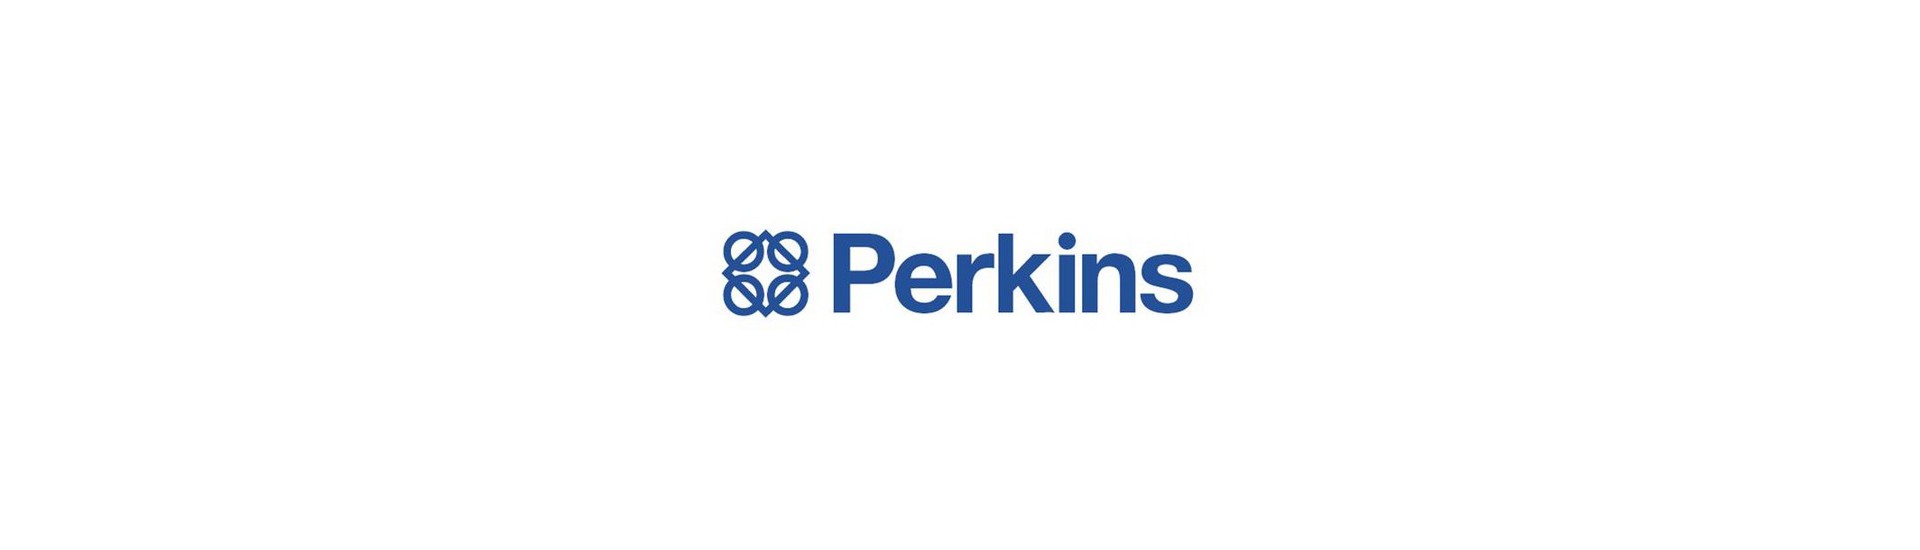 Pièces occasion moteur Perkins au meilleur prix